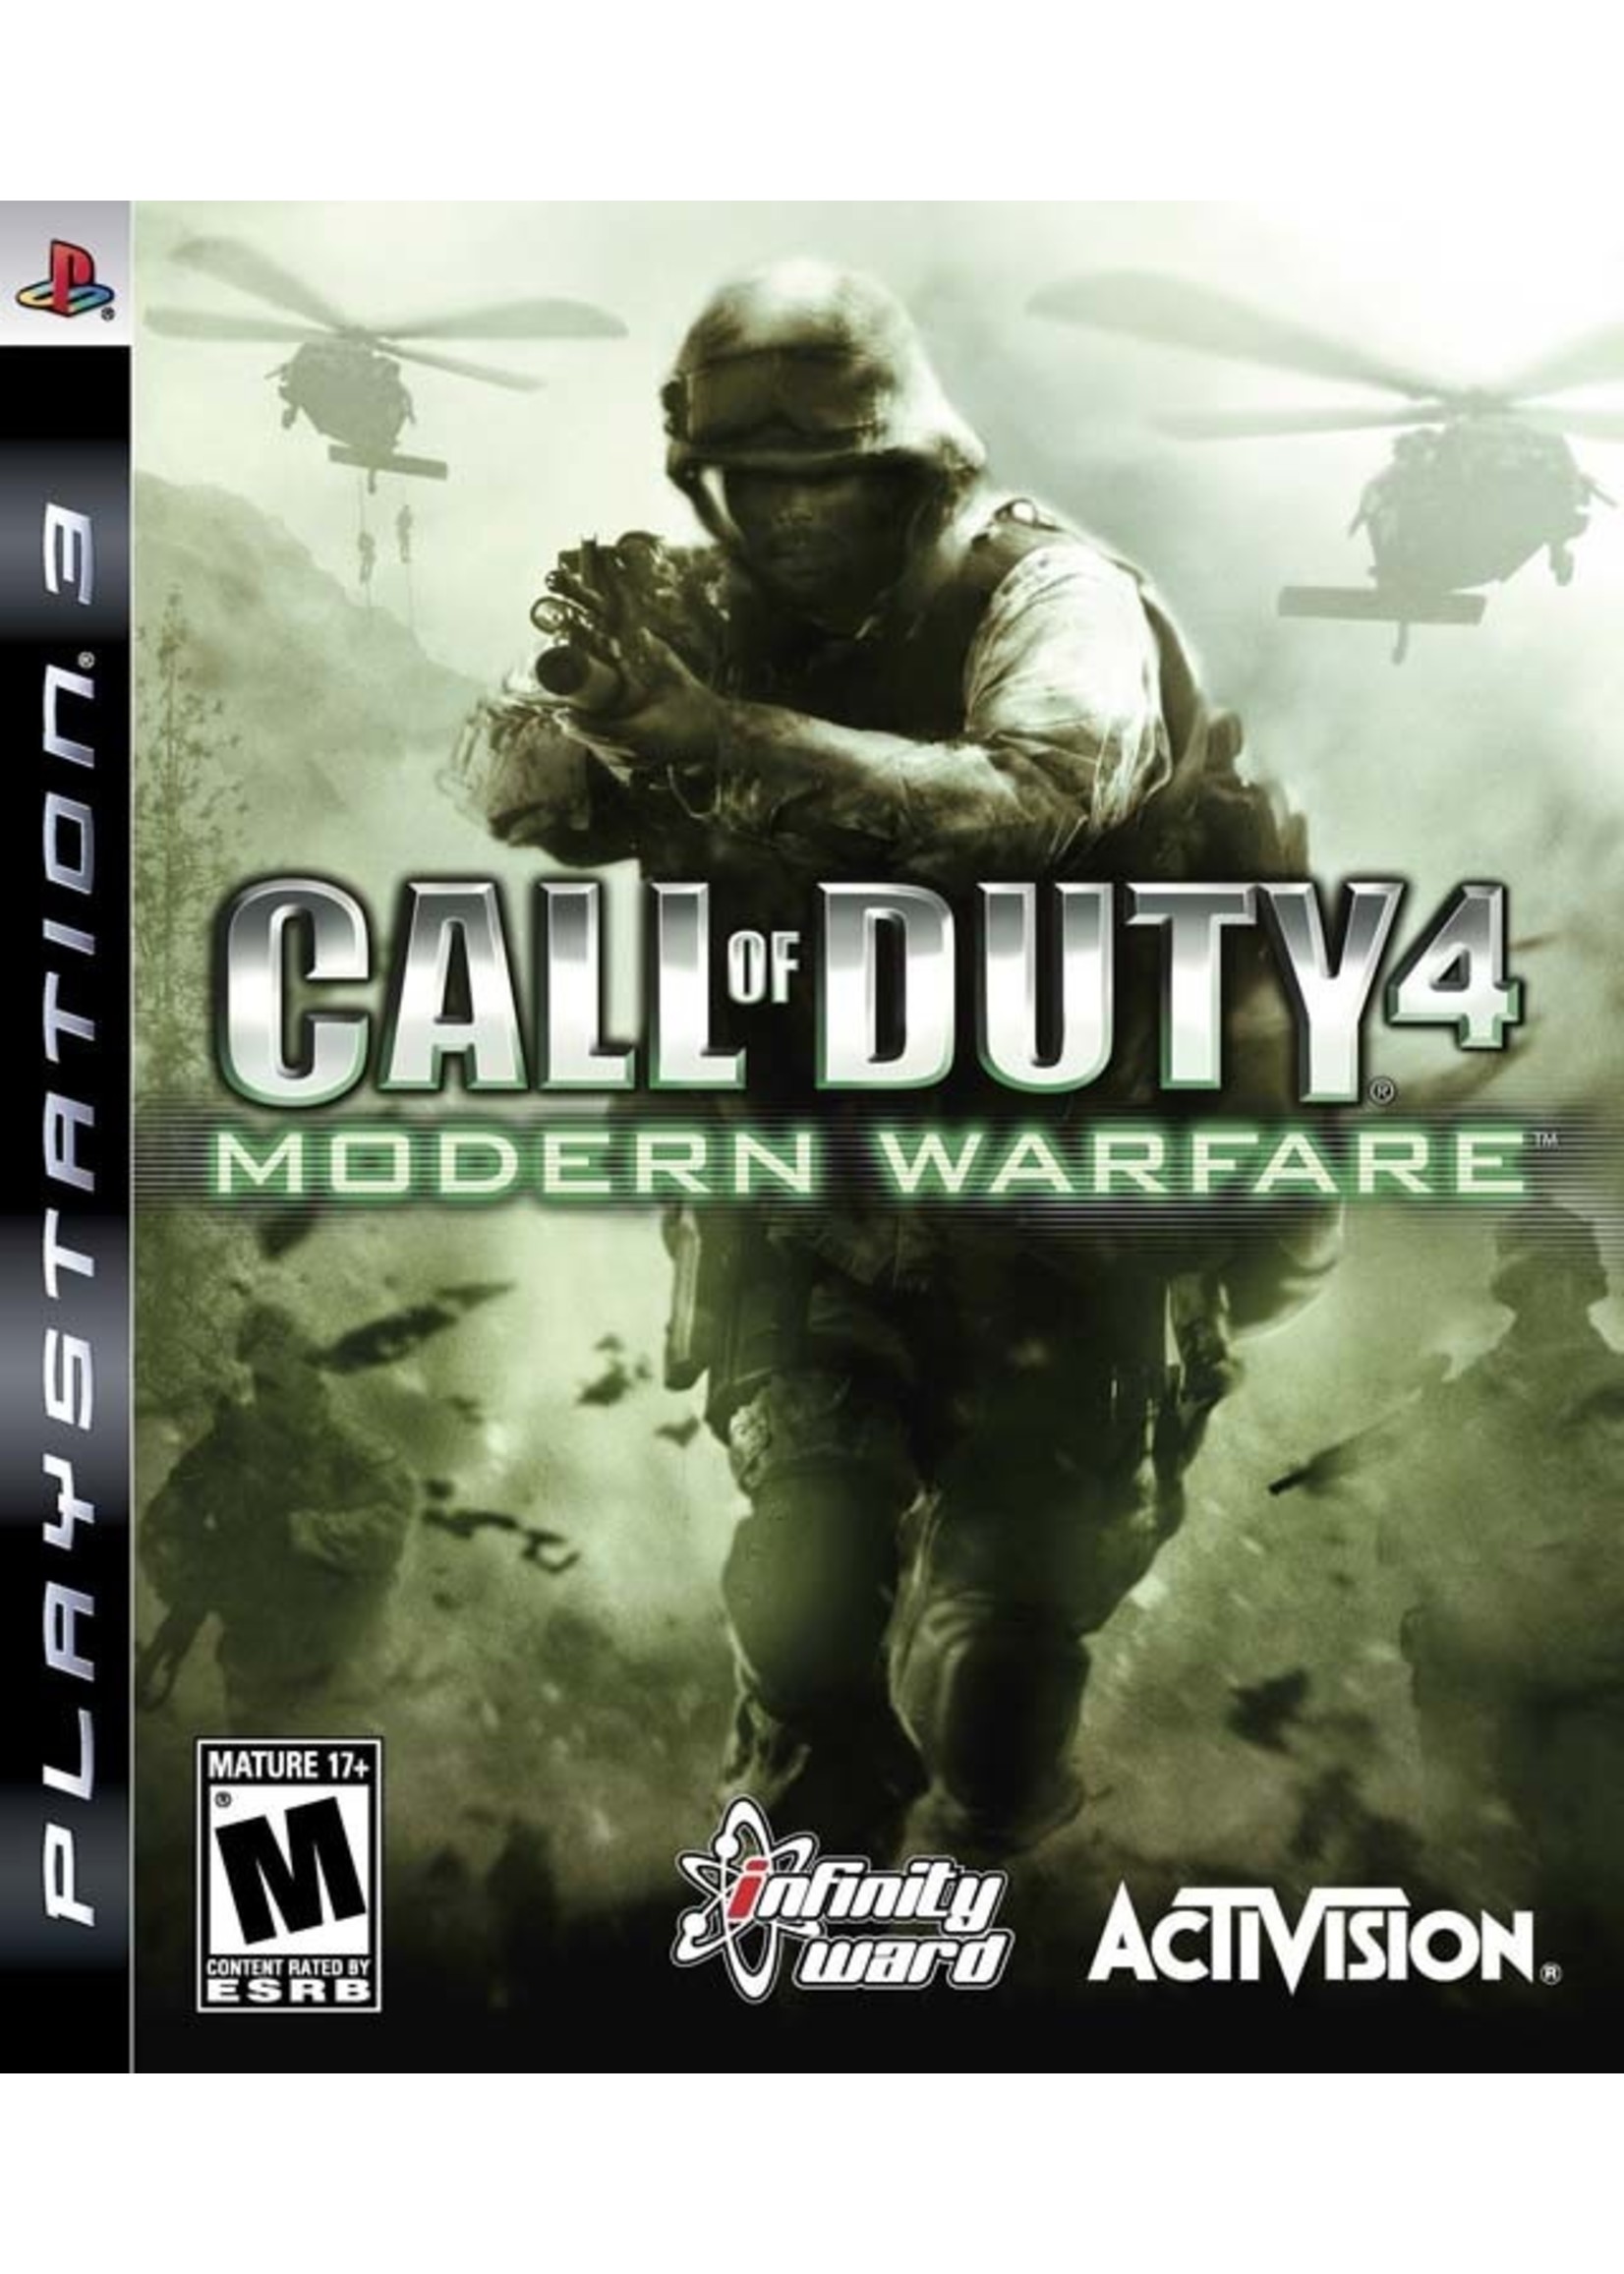 Sony Playstation 3 (PS3) Call of Duty 4 Modern Warfare